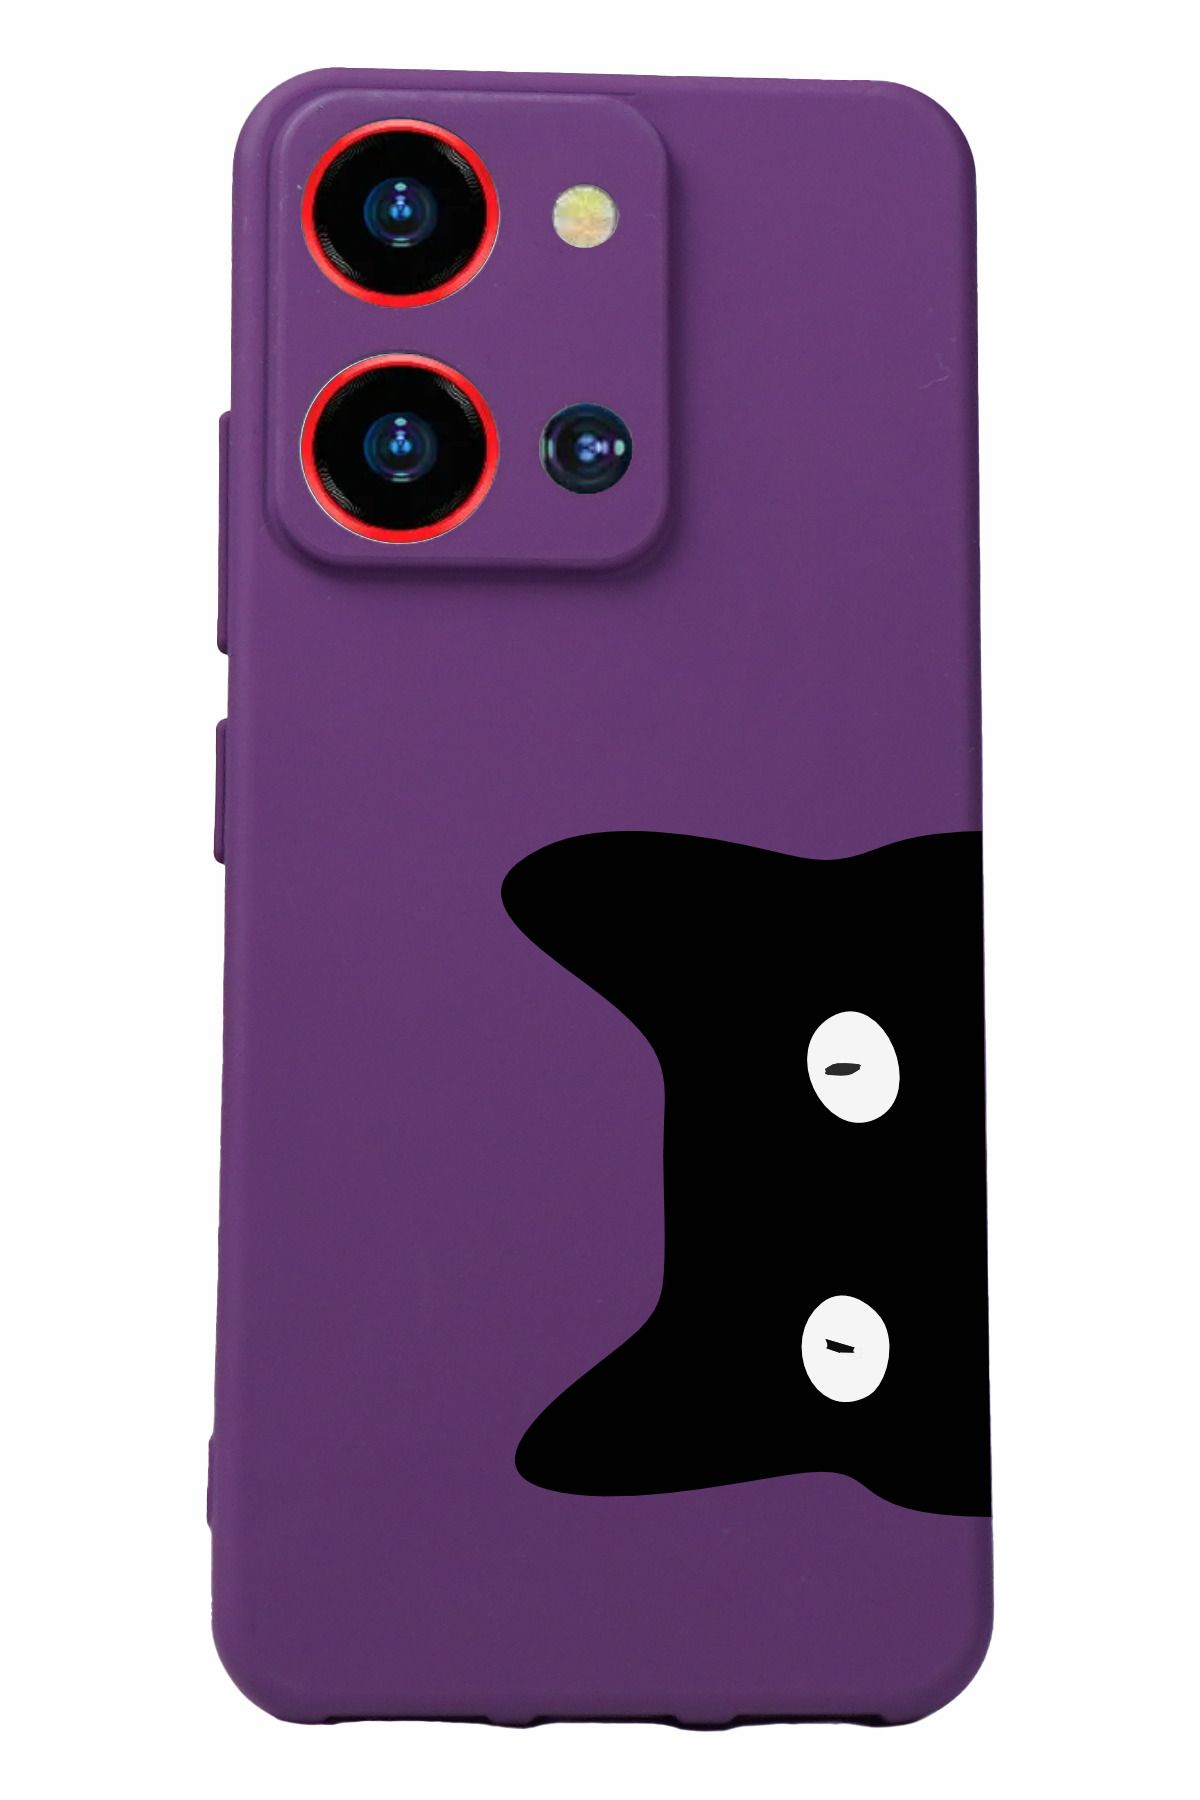 Reeder S19 Max Pro S Zoom Uyumlu Kamera Korumalı ve Tasarımlı Mor Renk Silikon Kılıf